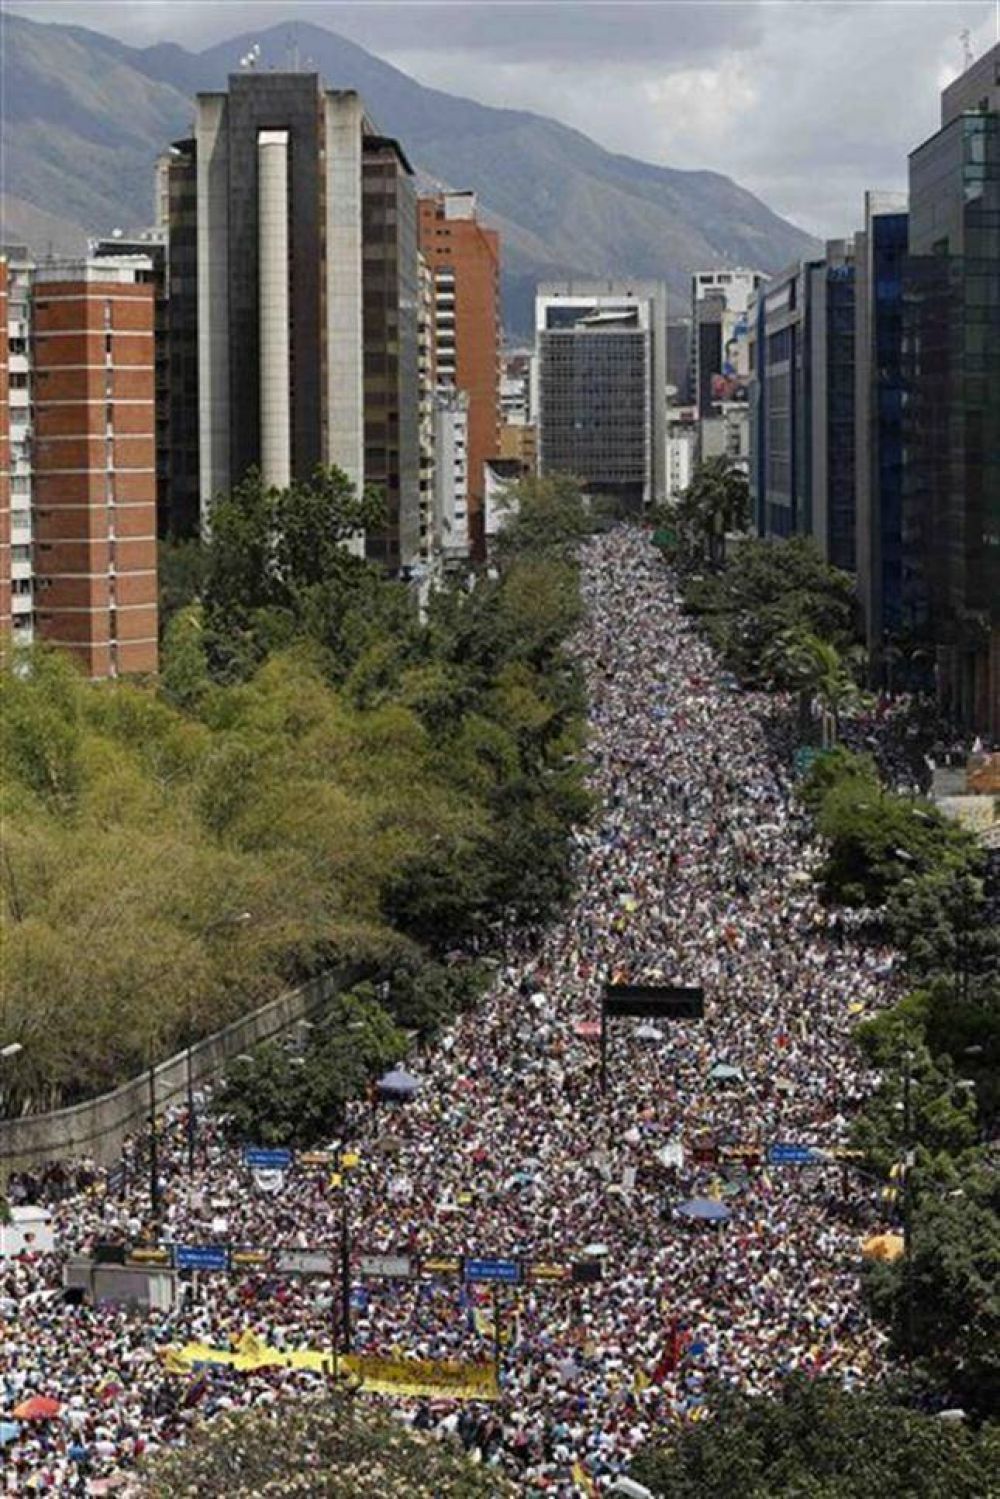 Los estudiantes venezolanos volvieron a la calle